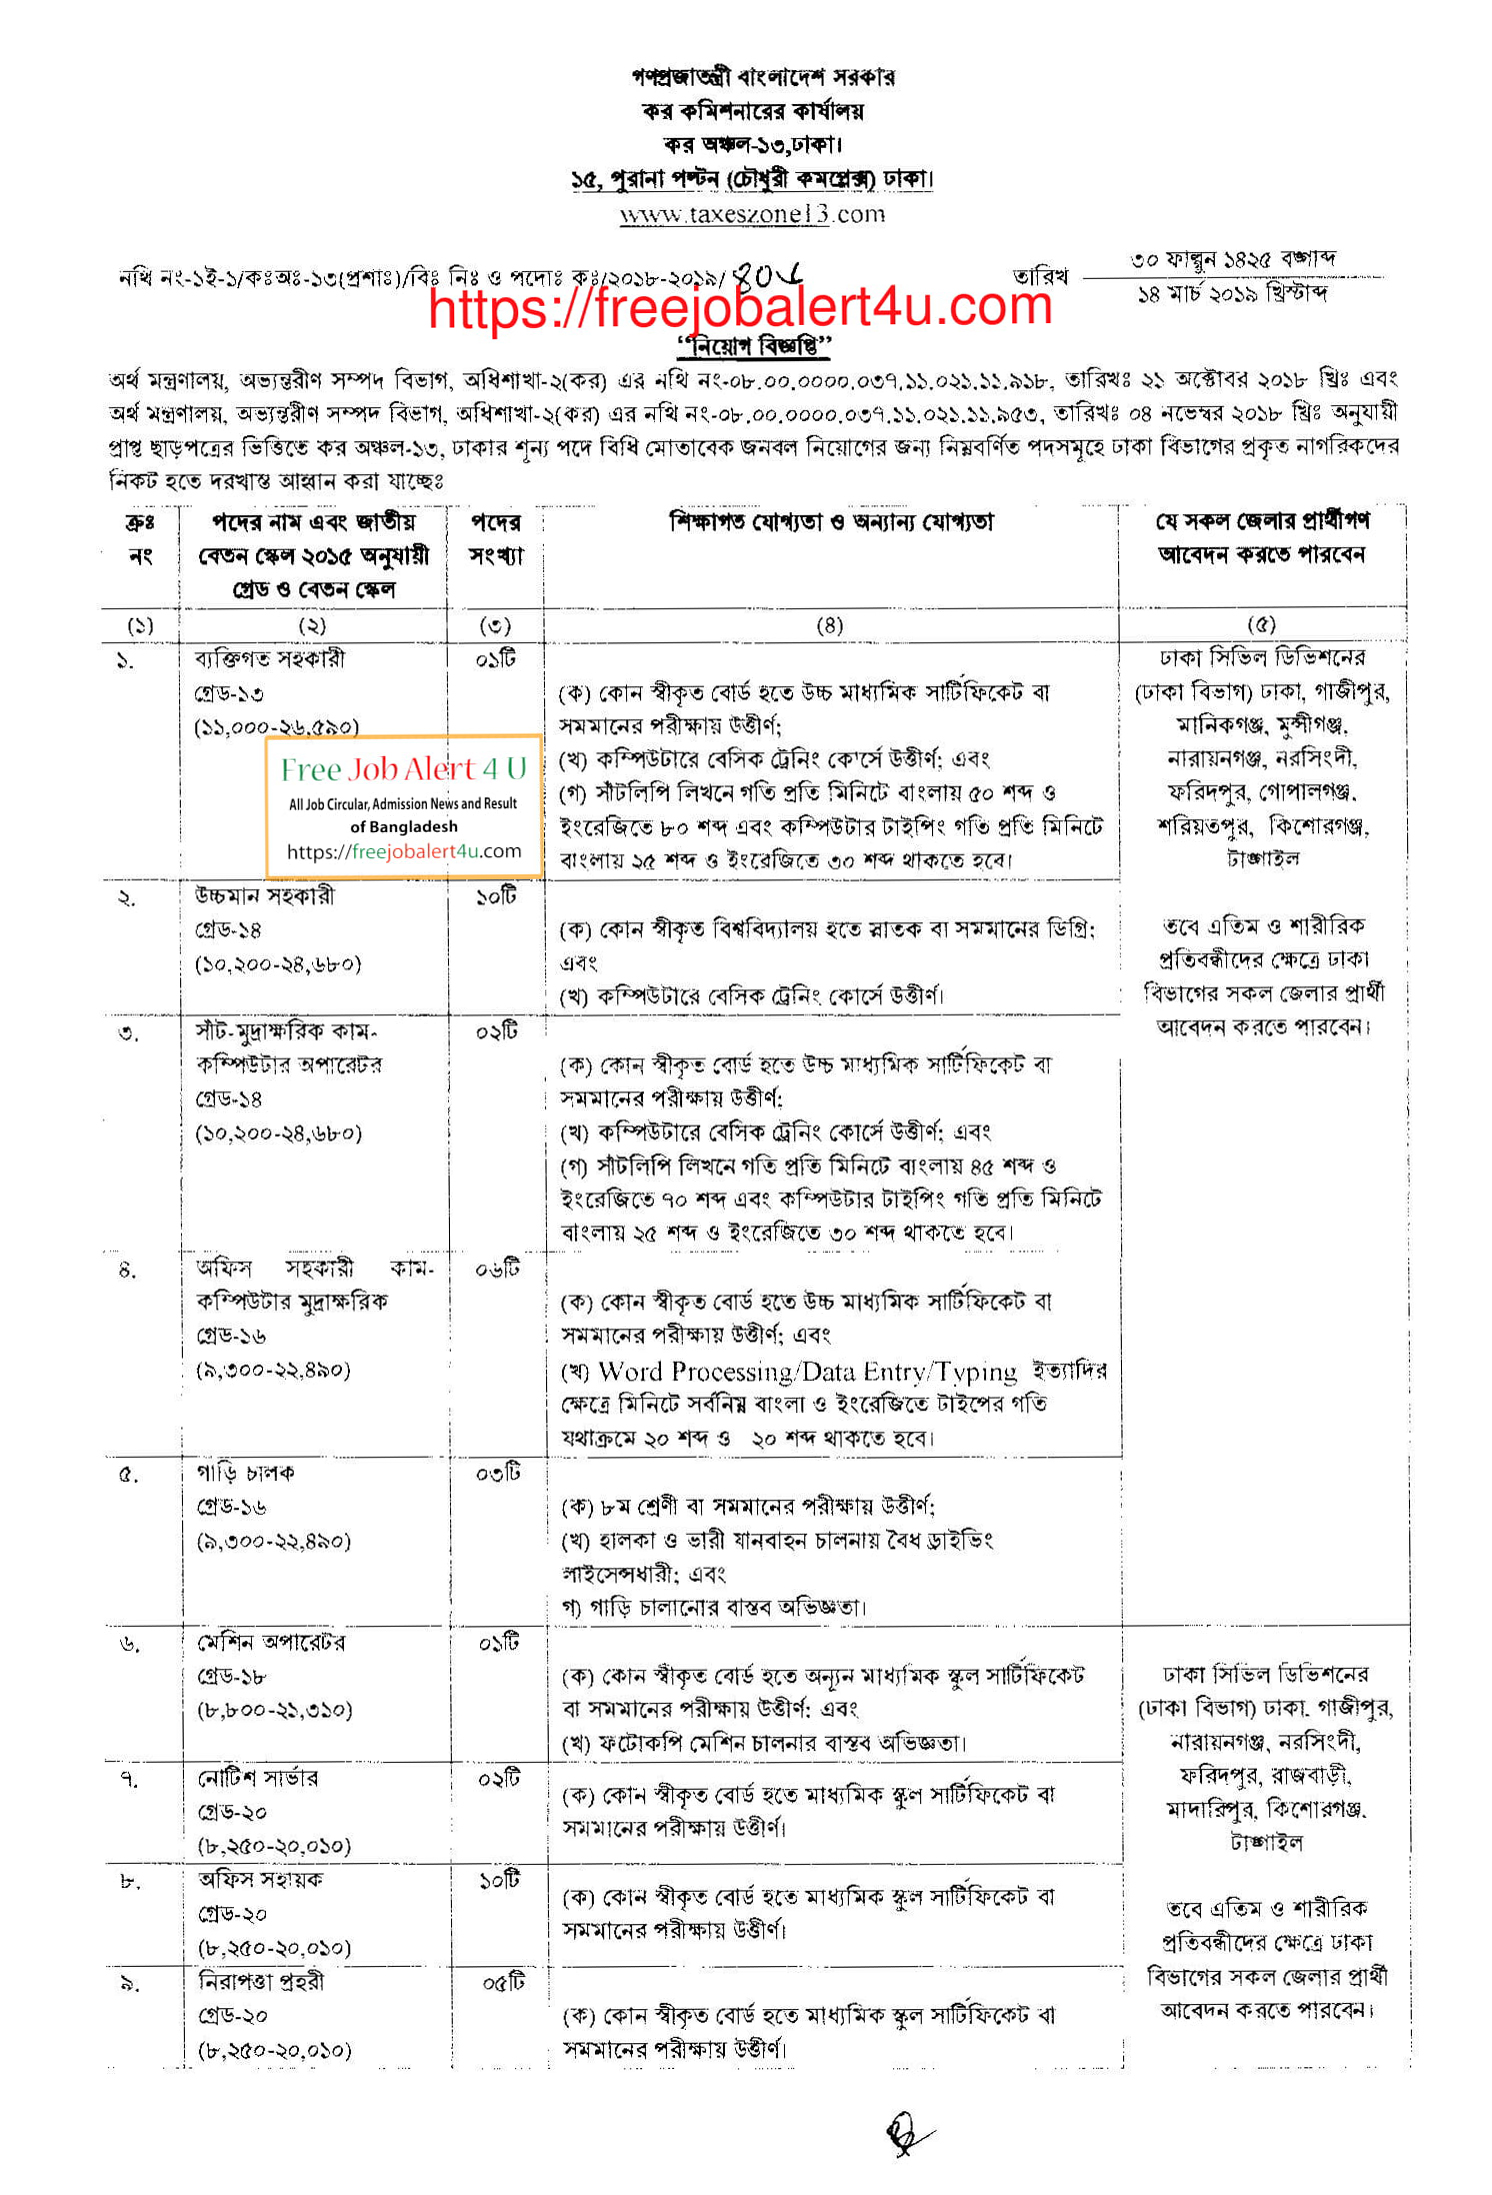 কর কমিশনারের কার্যালয়ে নিয়োগ বিজ্ঞপ্তি ২০১৯ (Tax zone 13 dhaka job circular 2019)